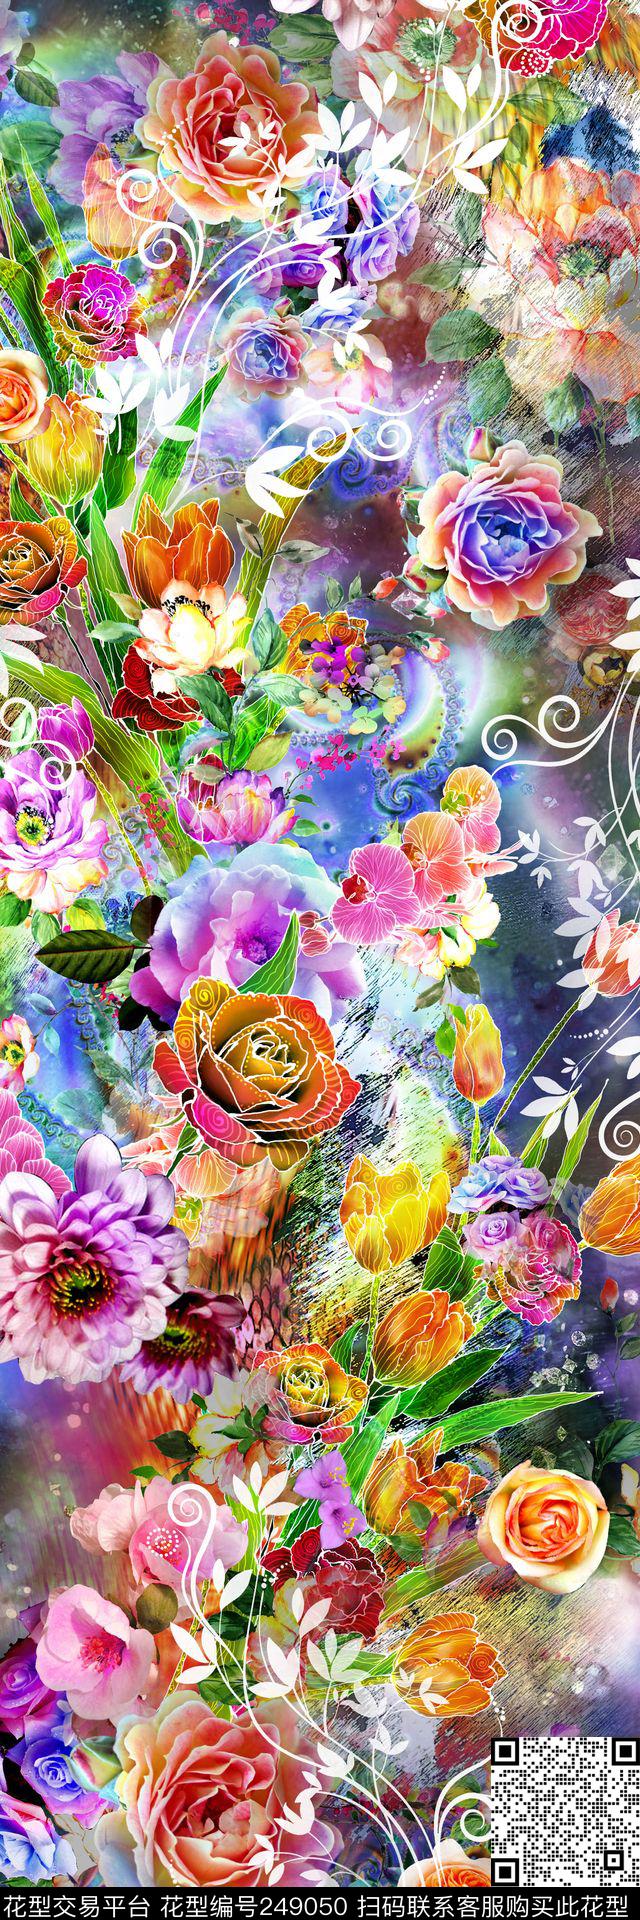 数码多彩镂空线条花朵大牡丹花朵 - 249050 - 数码 多彩 镂空 线条 花朵 大牡丹 花卉 服装 - 数码印花花型 － 女装花型设计 － 瓦栏